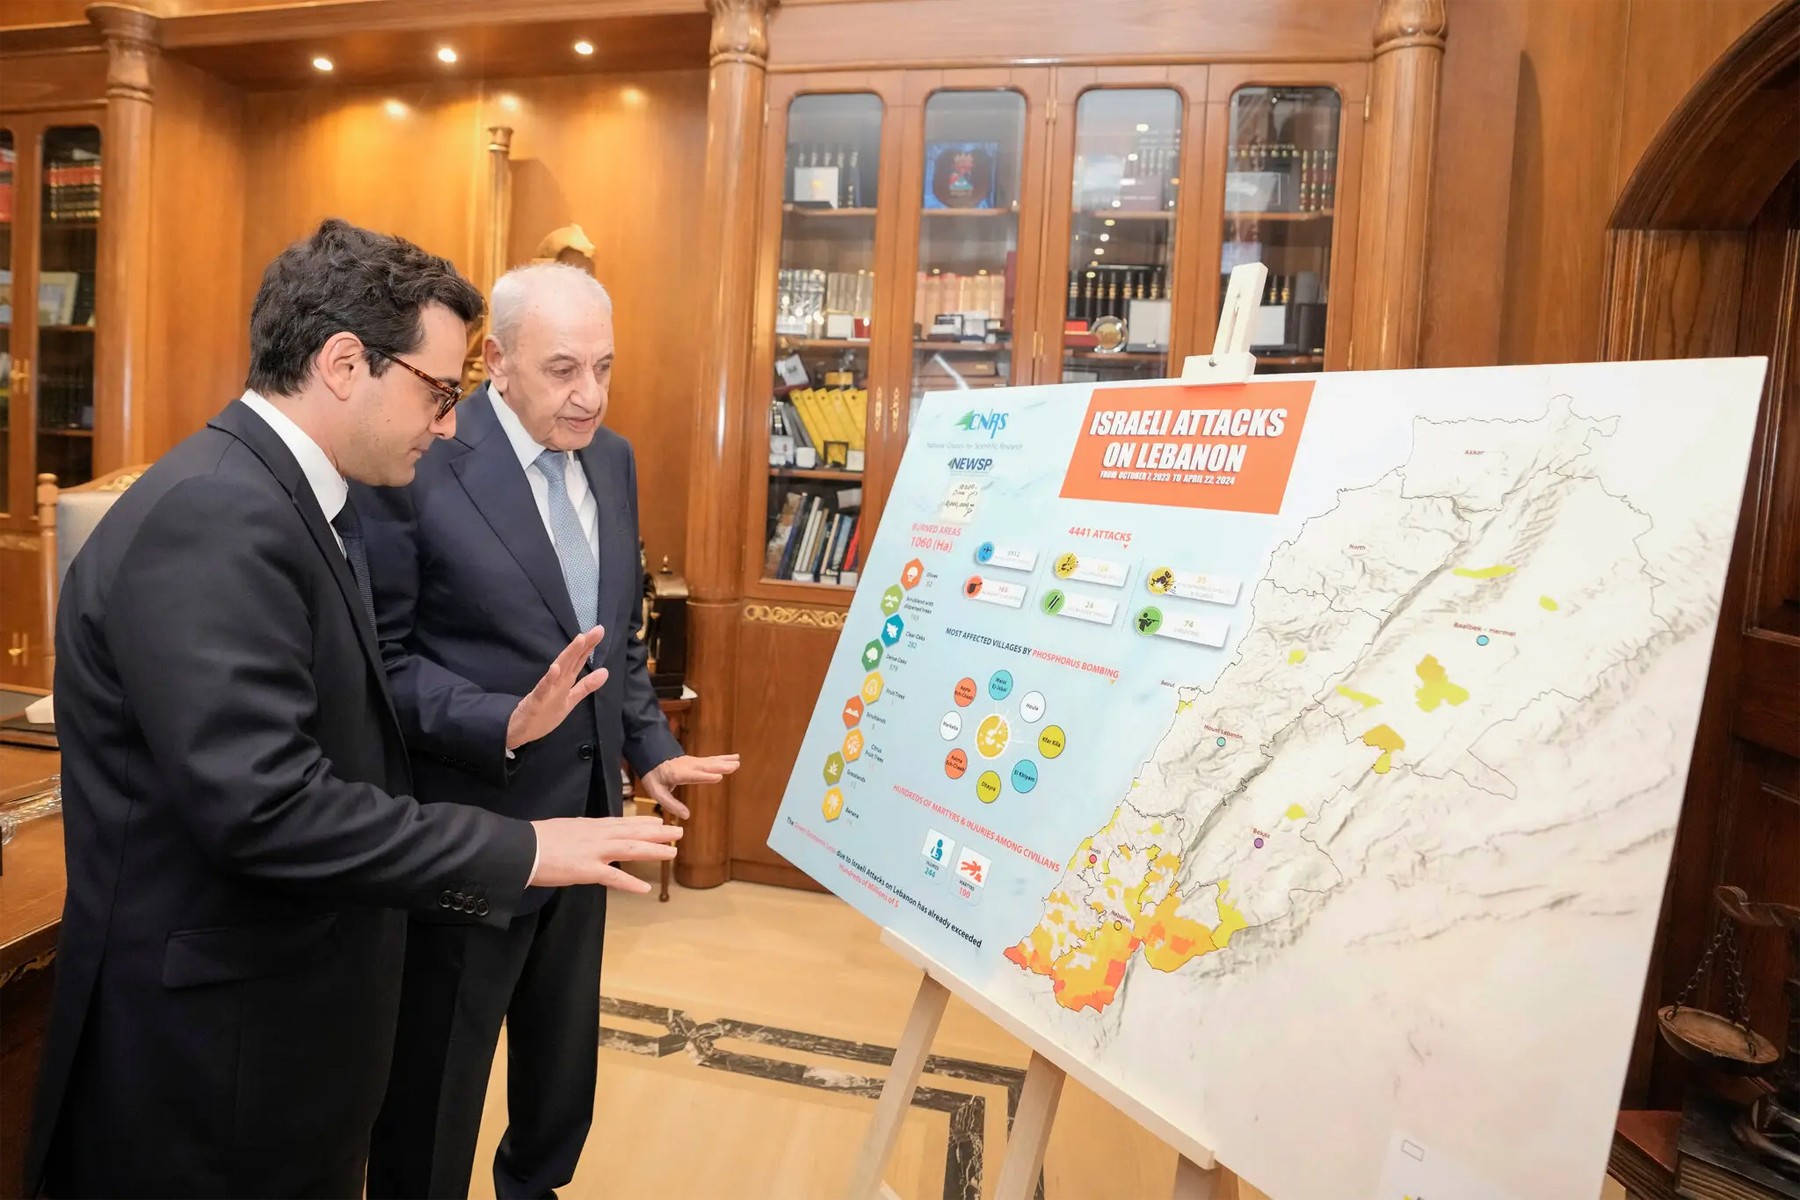 وزیر امور خارجه فرانسه برای گفتگو در مورد درگیری ها میان حزب الله و اسرائیل در لبنان به سر می برد